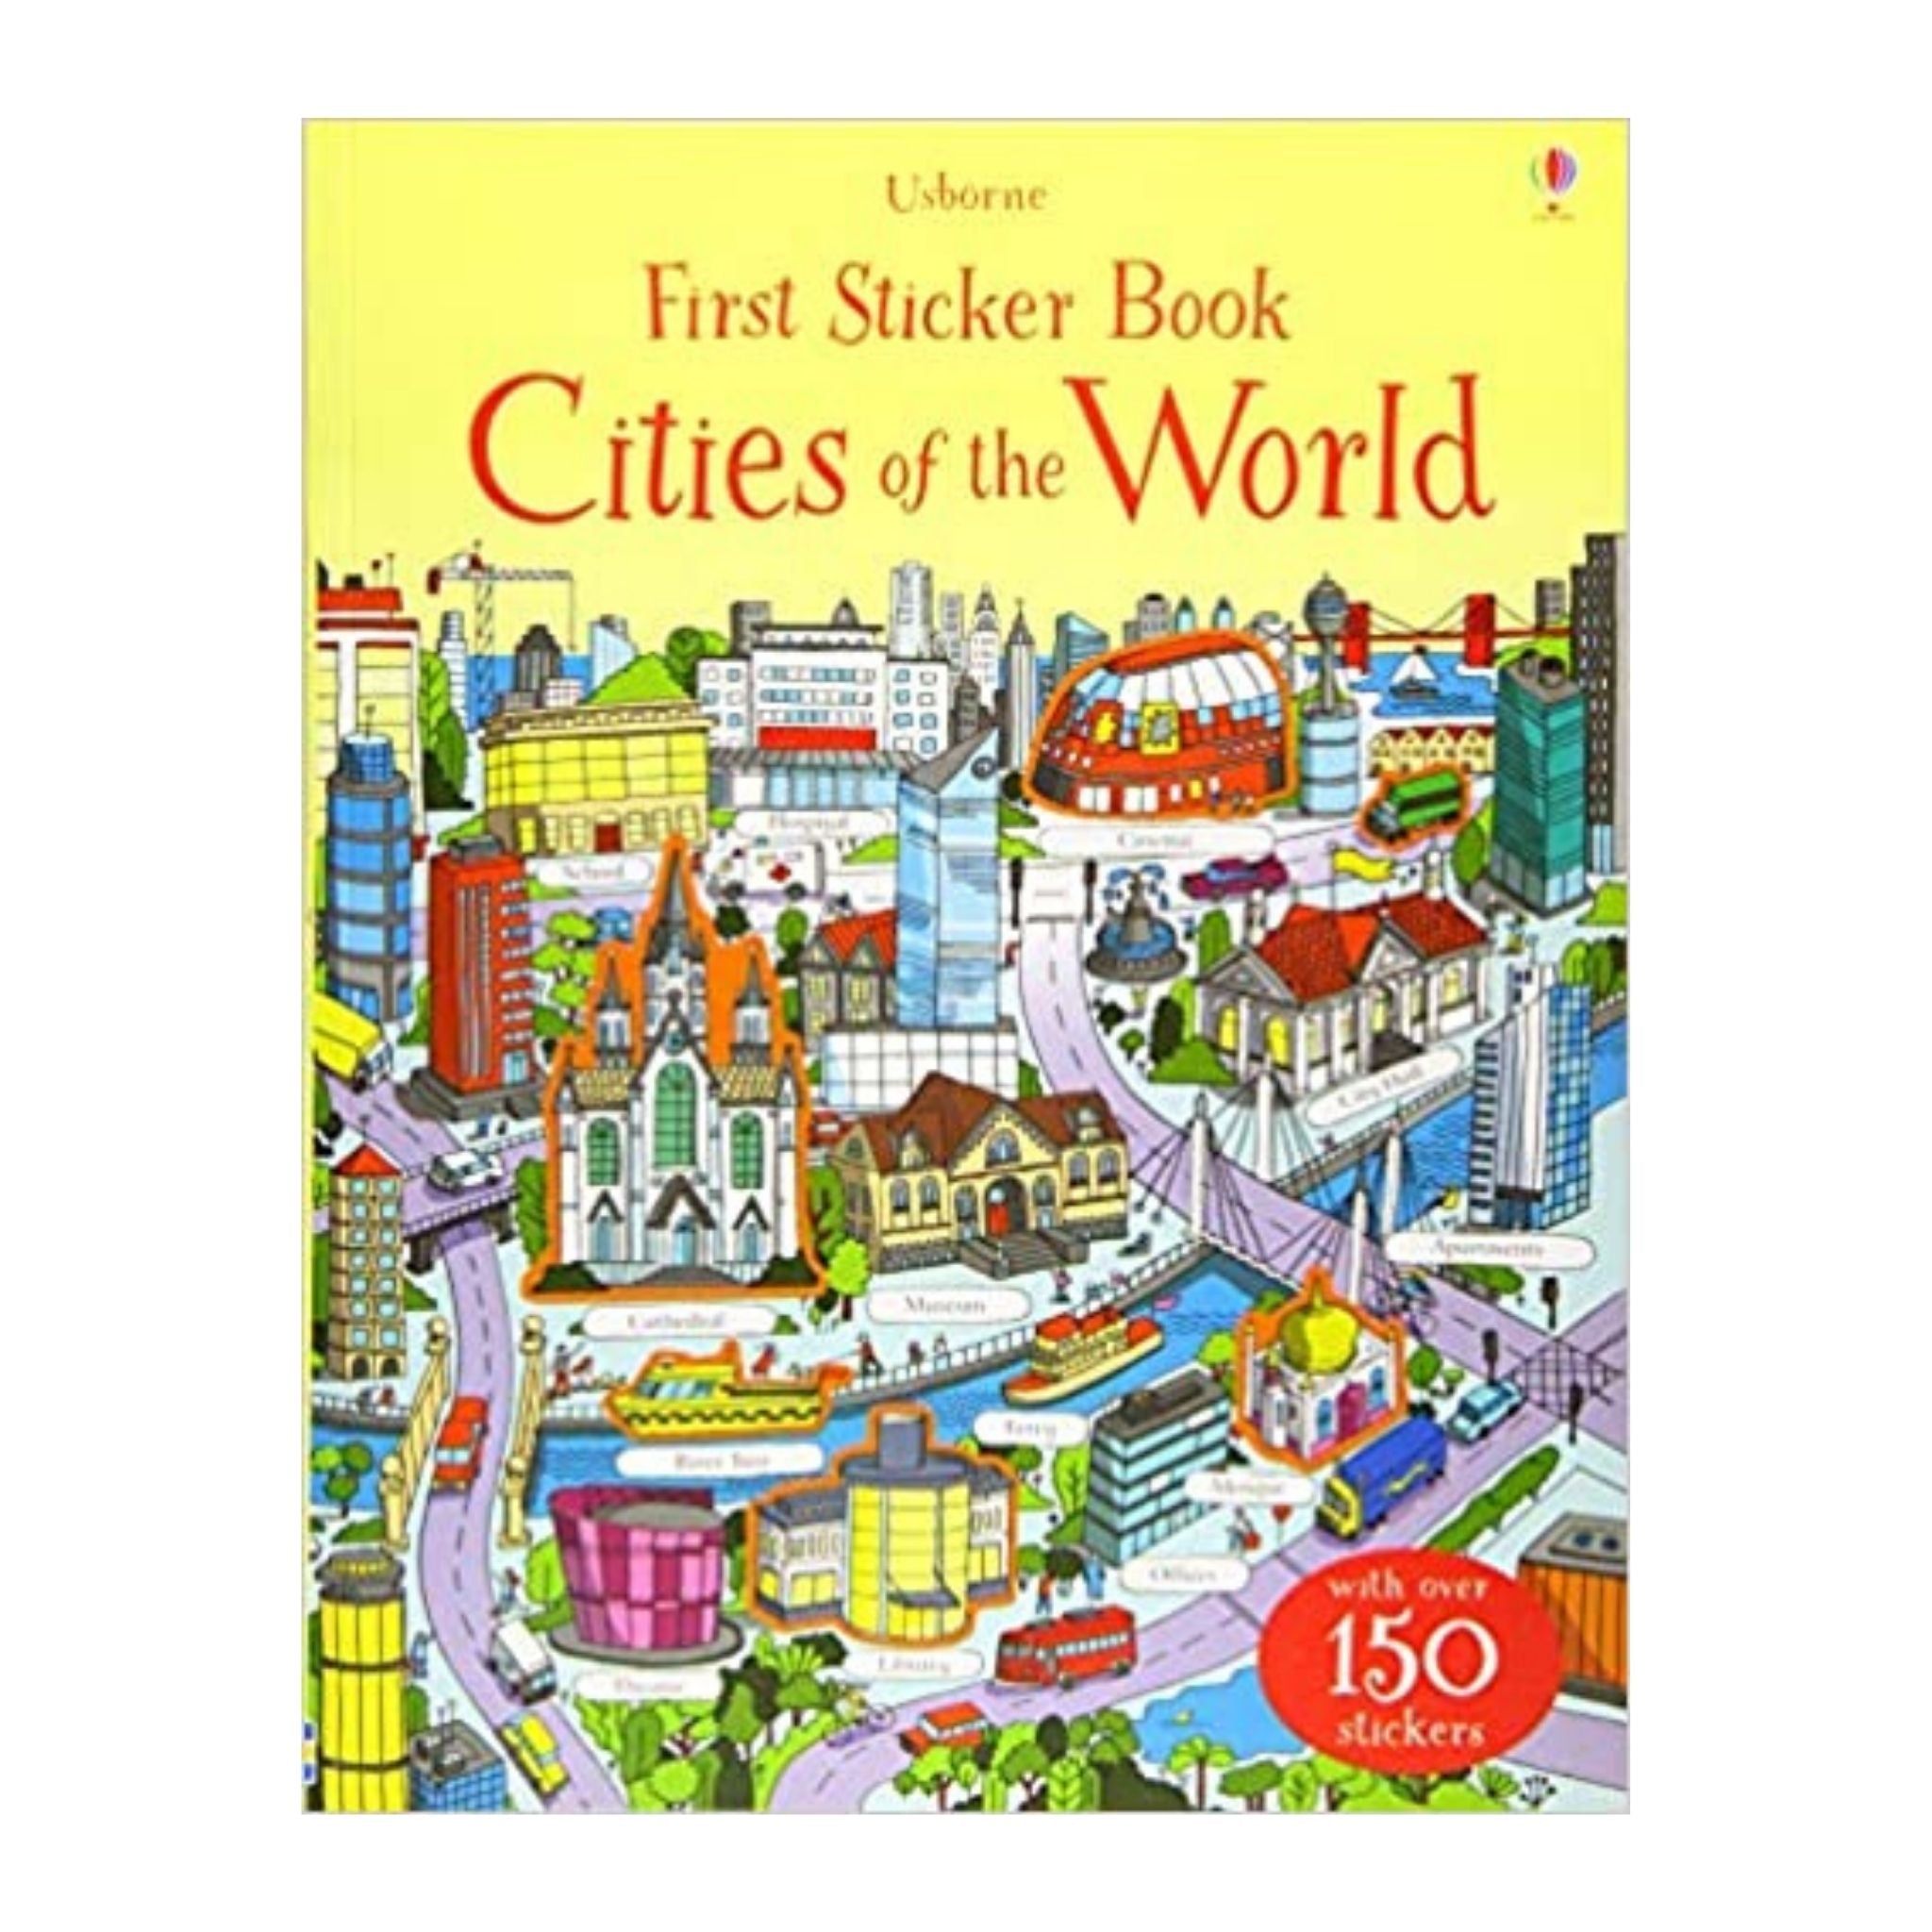 First Sticker Book Cities of the World (First Sticker Books)